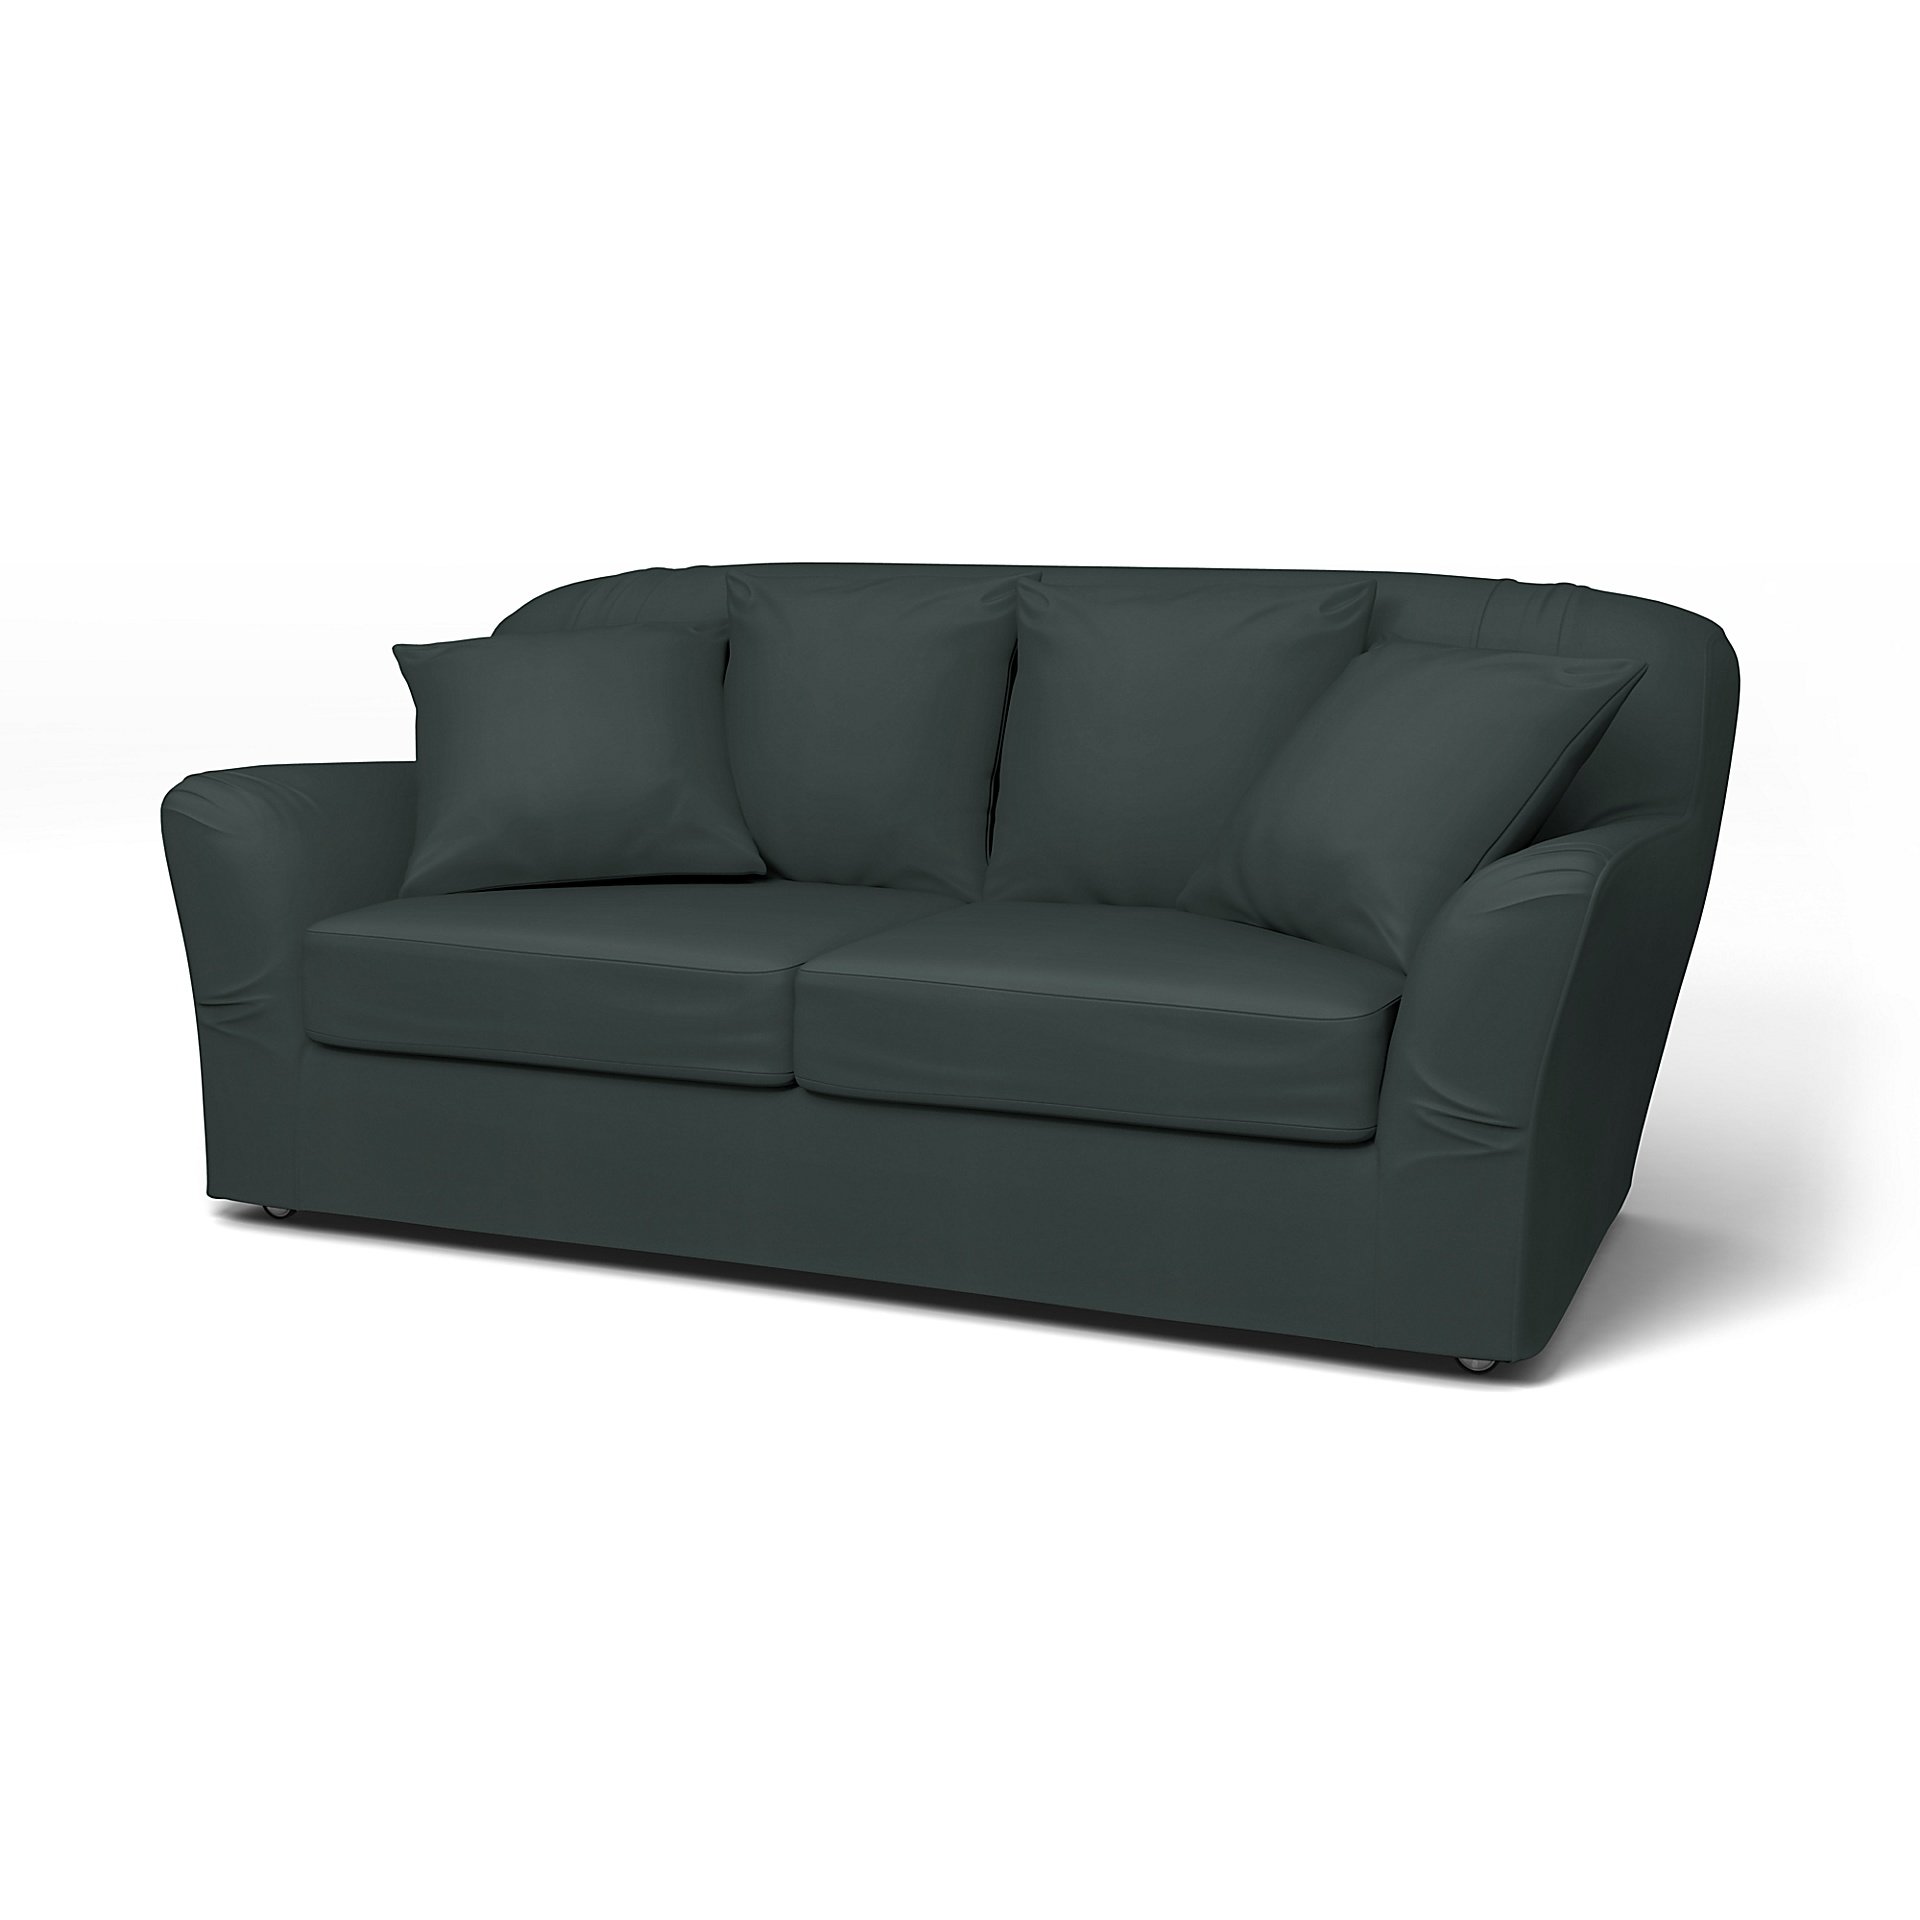 IKEA - Tomelilla 2 seater sofa, Graphite Grey, Cotton - Bemz